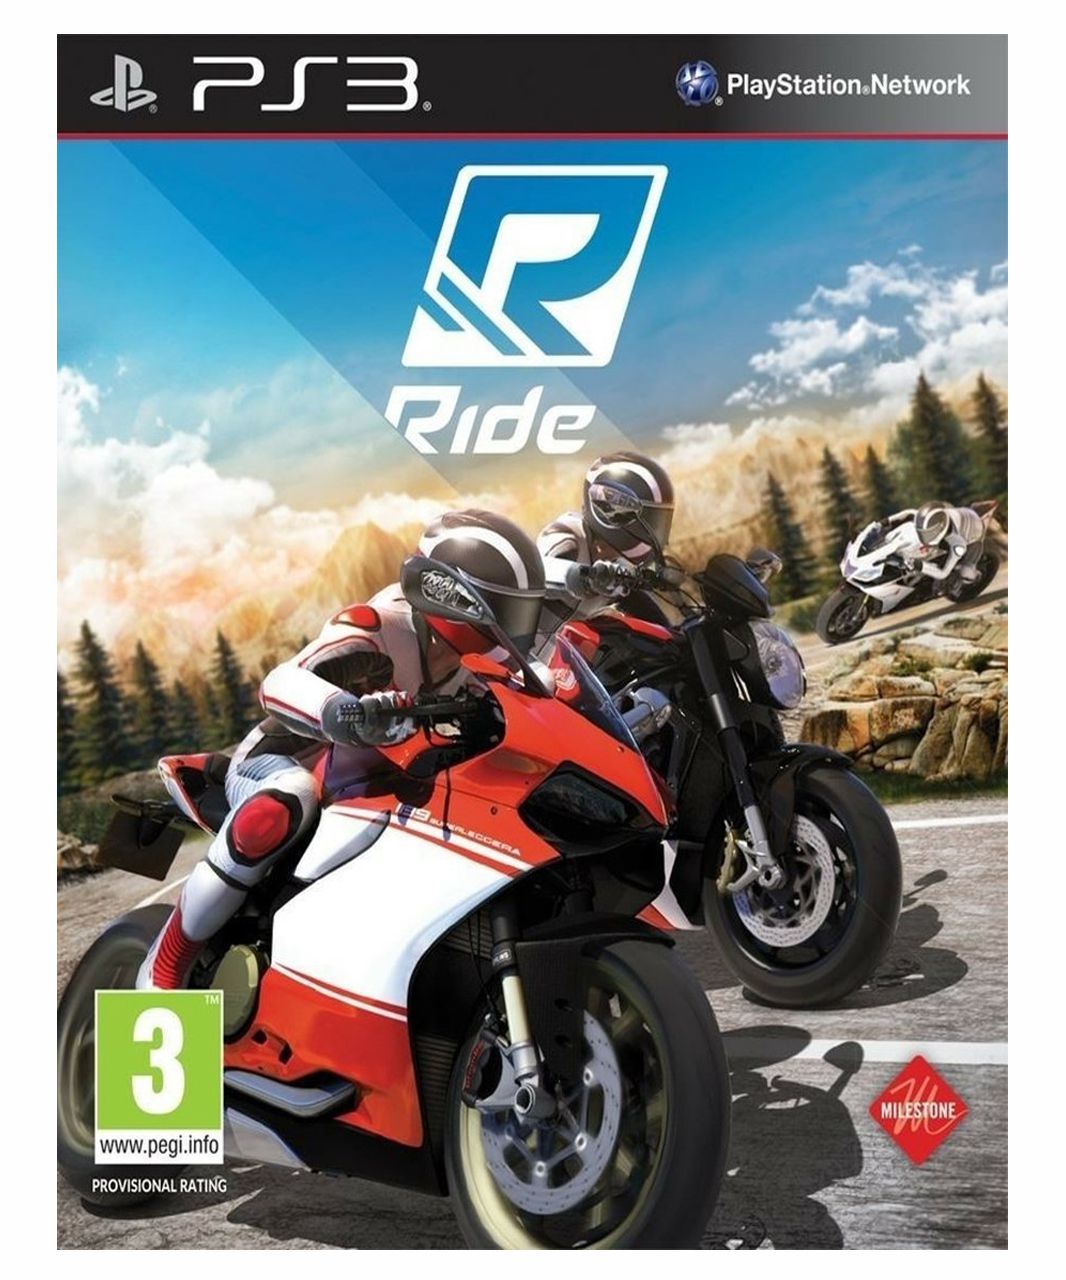 Ride - PlayStation 4  Jogos ps4, Jogos de corrida, Xbox one